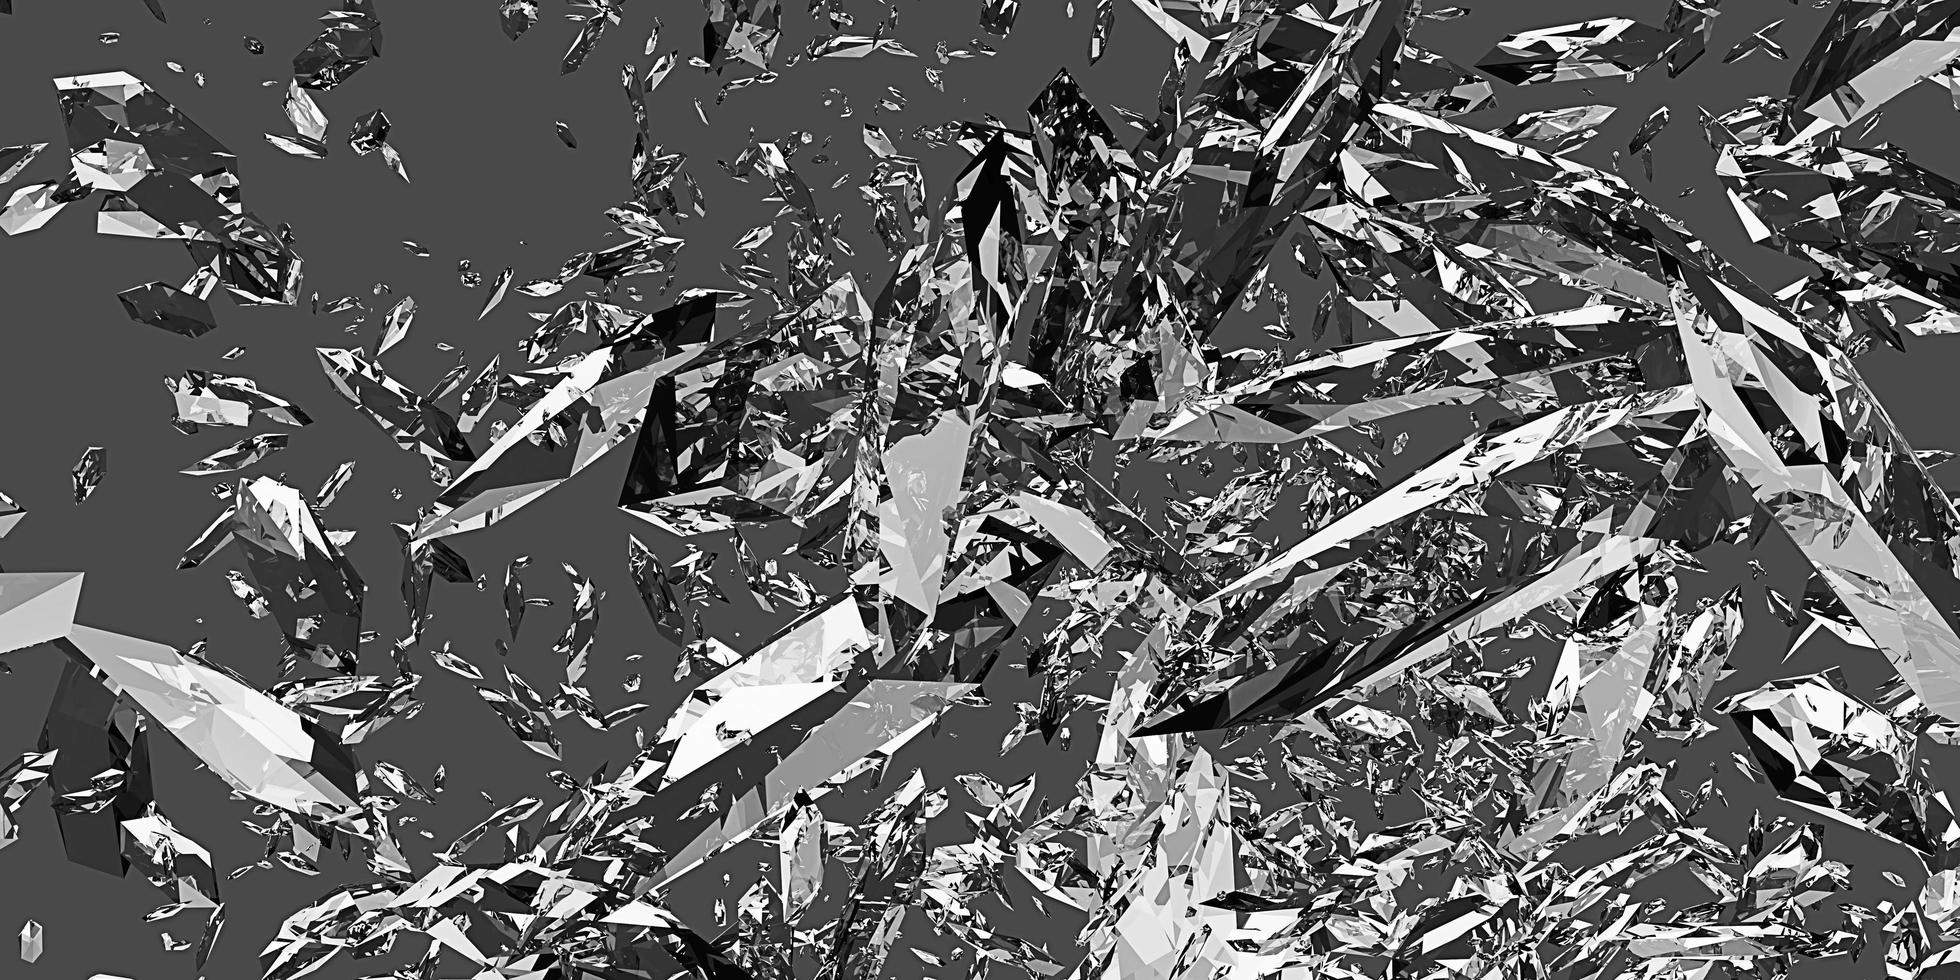 zerbrochenes glas zerbrochenes glas staubpartikel explosionsfragmente verstreuter hintergrund 3d illustration foto